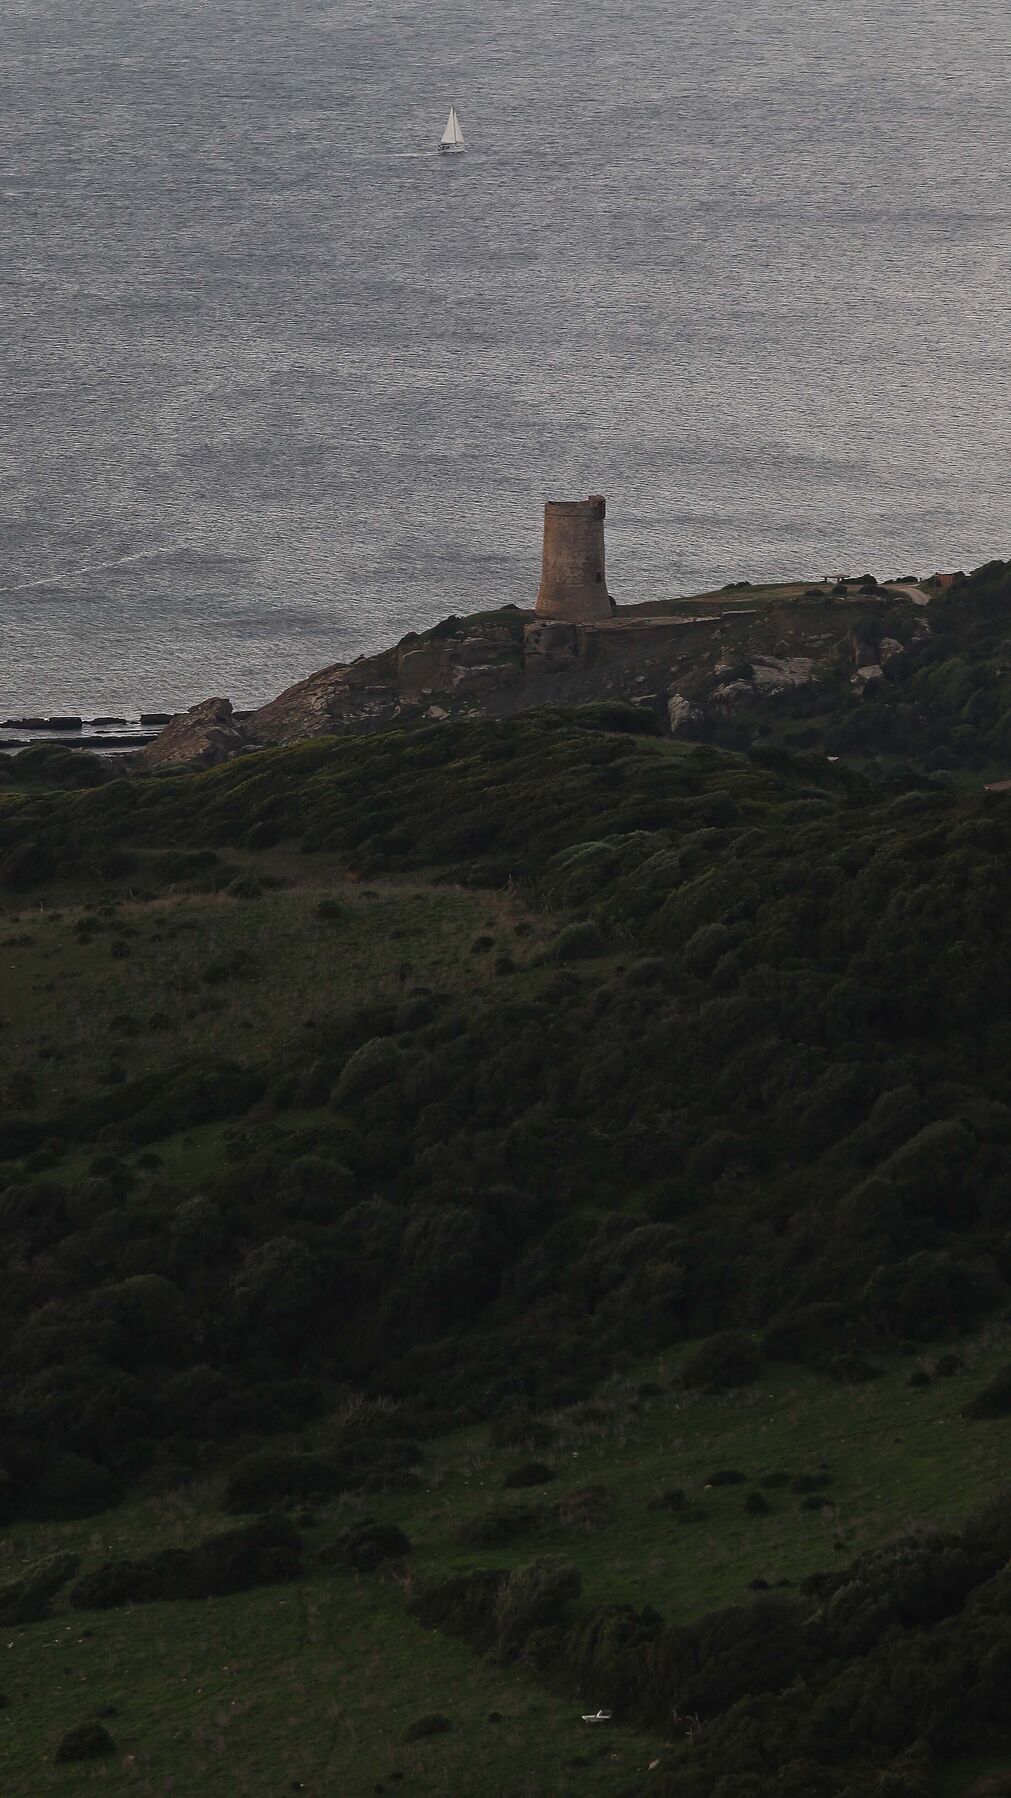 Fotos del sendero del Cerro del Tambor en Algeciras